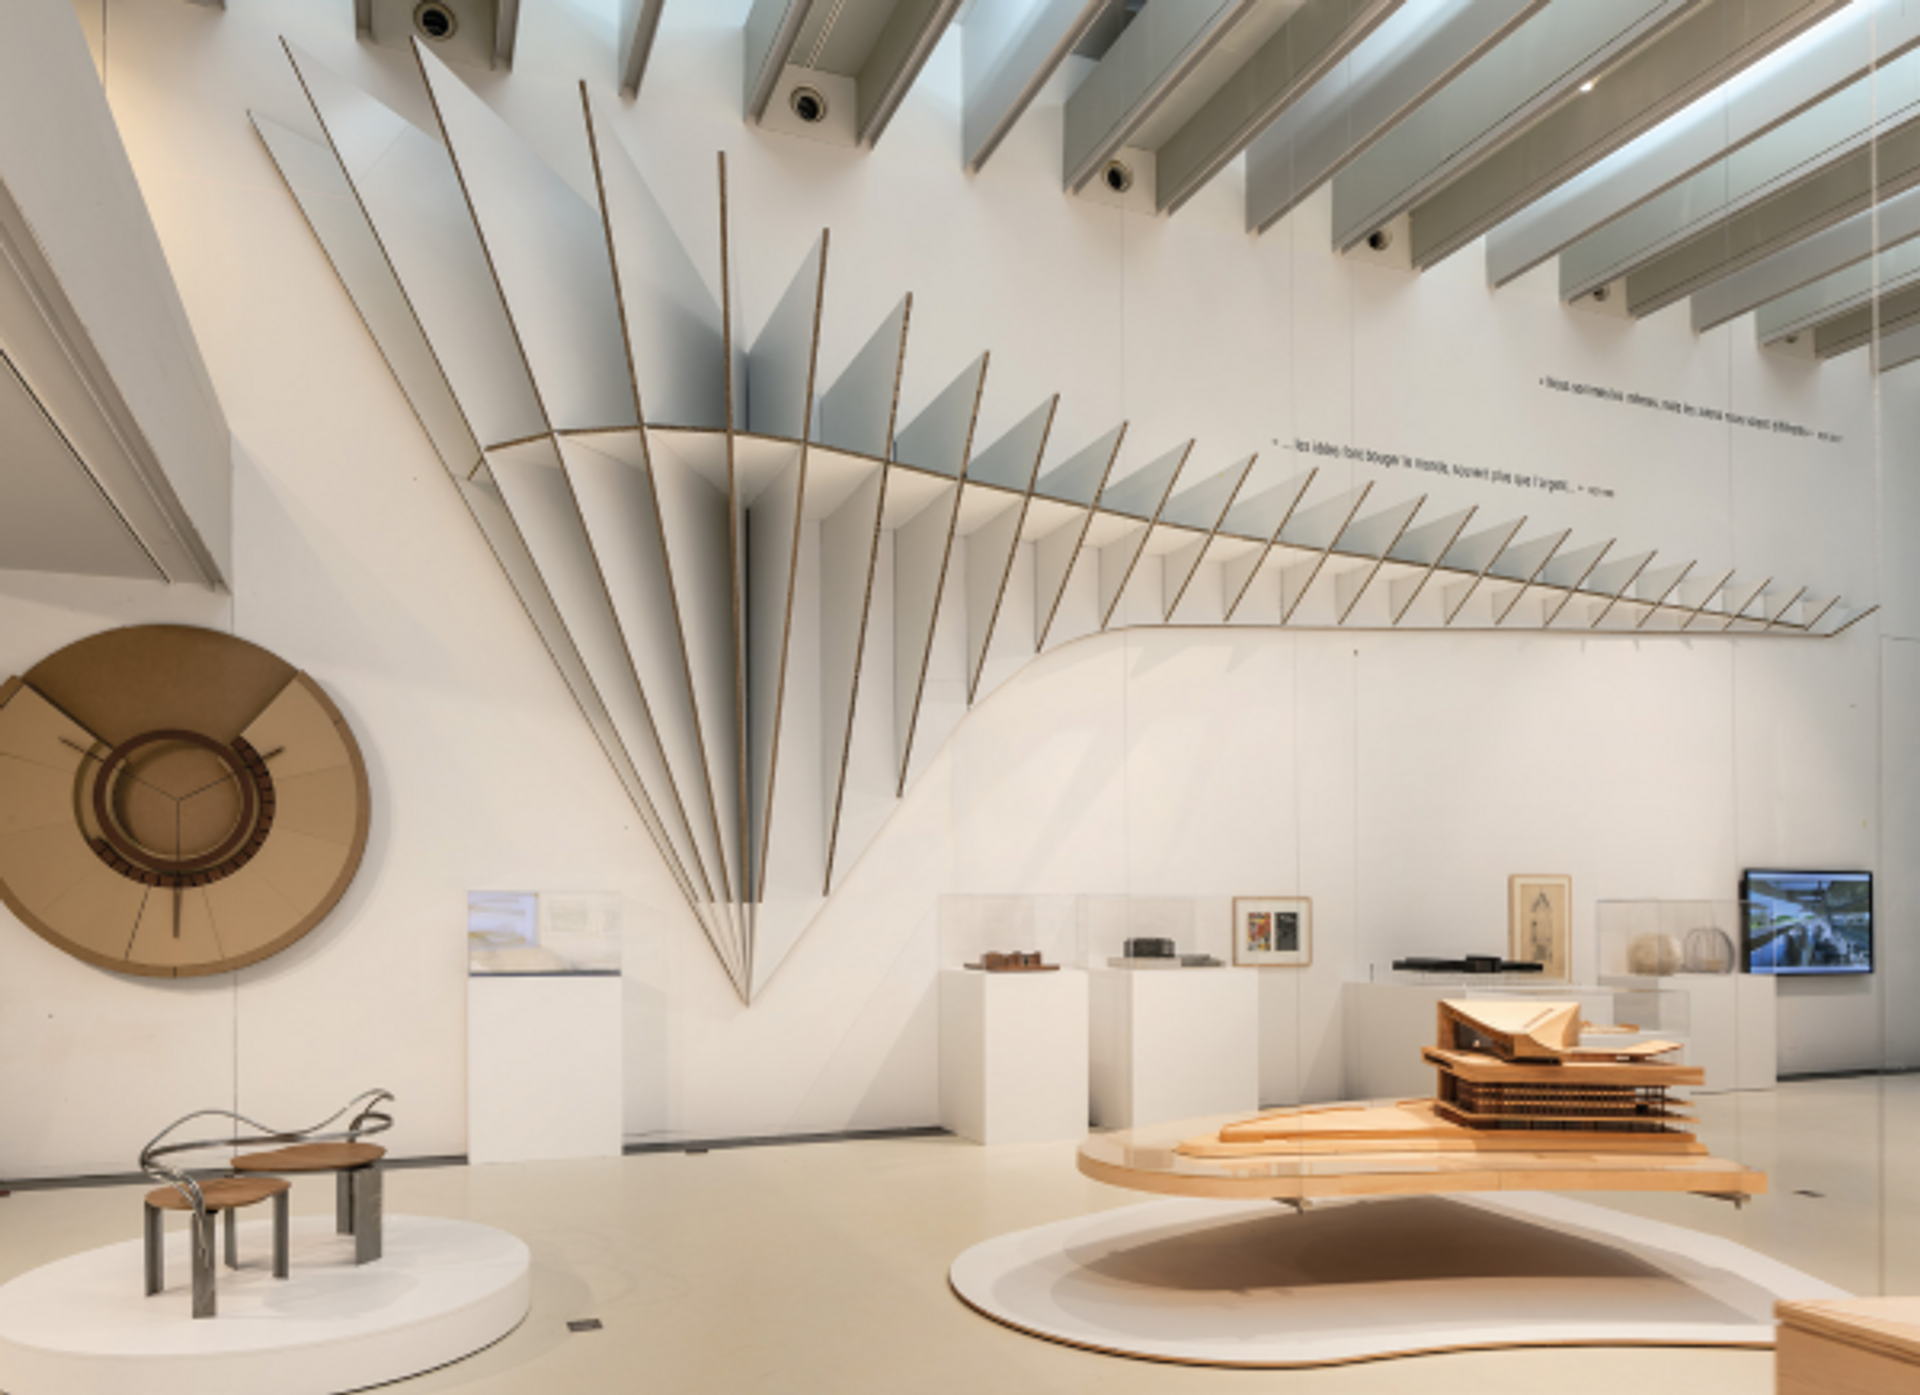 Vue de l’exposition « RCR Arquitectes. Ici et ailleurs, la matière et le temps », musée Soulages, Rodez, 2022. © Thierry Estadieu